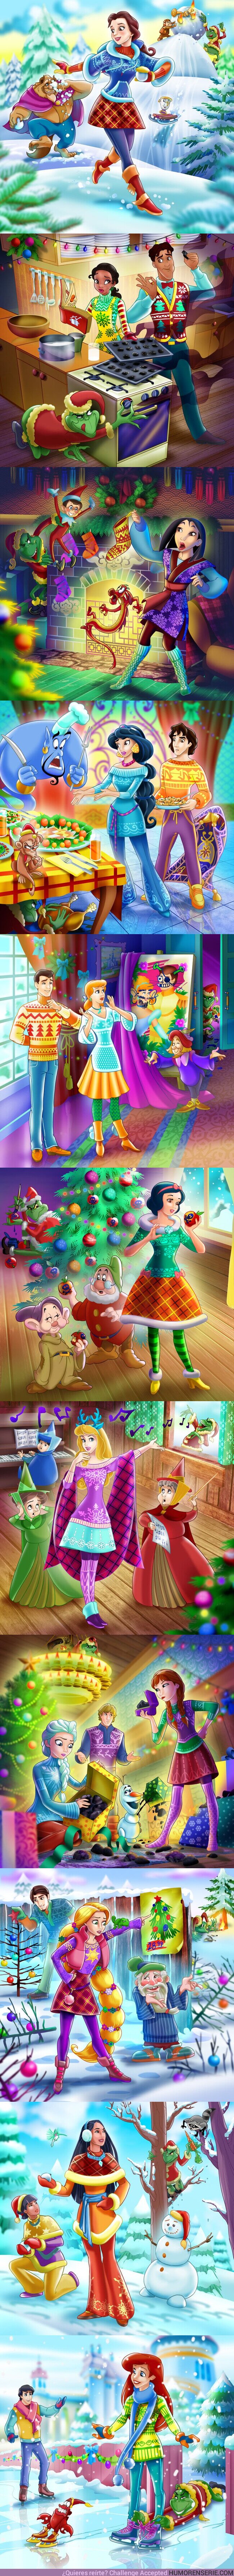 63530 - GALERÍA: Cómo arruinaría el Grinch la Navidad de 12 princesas de Disney